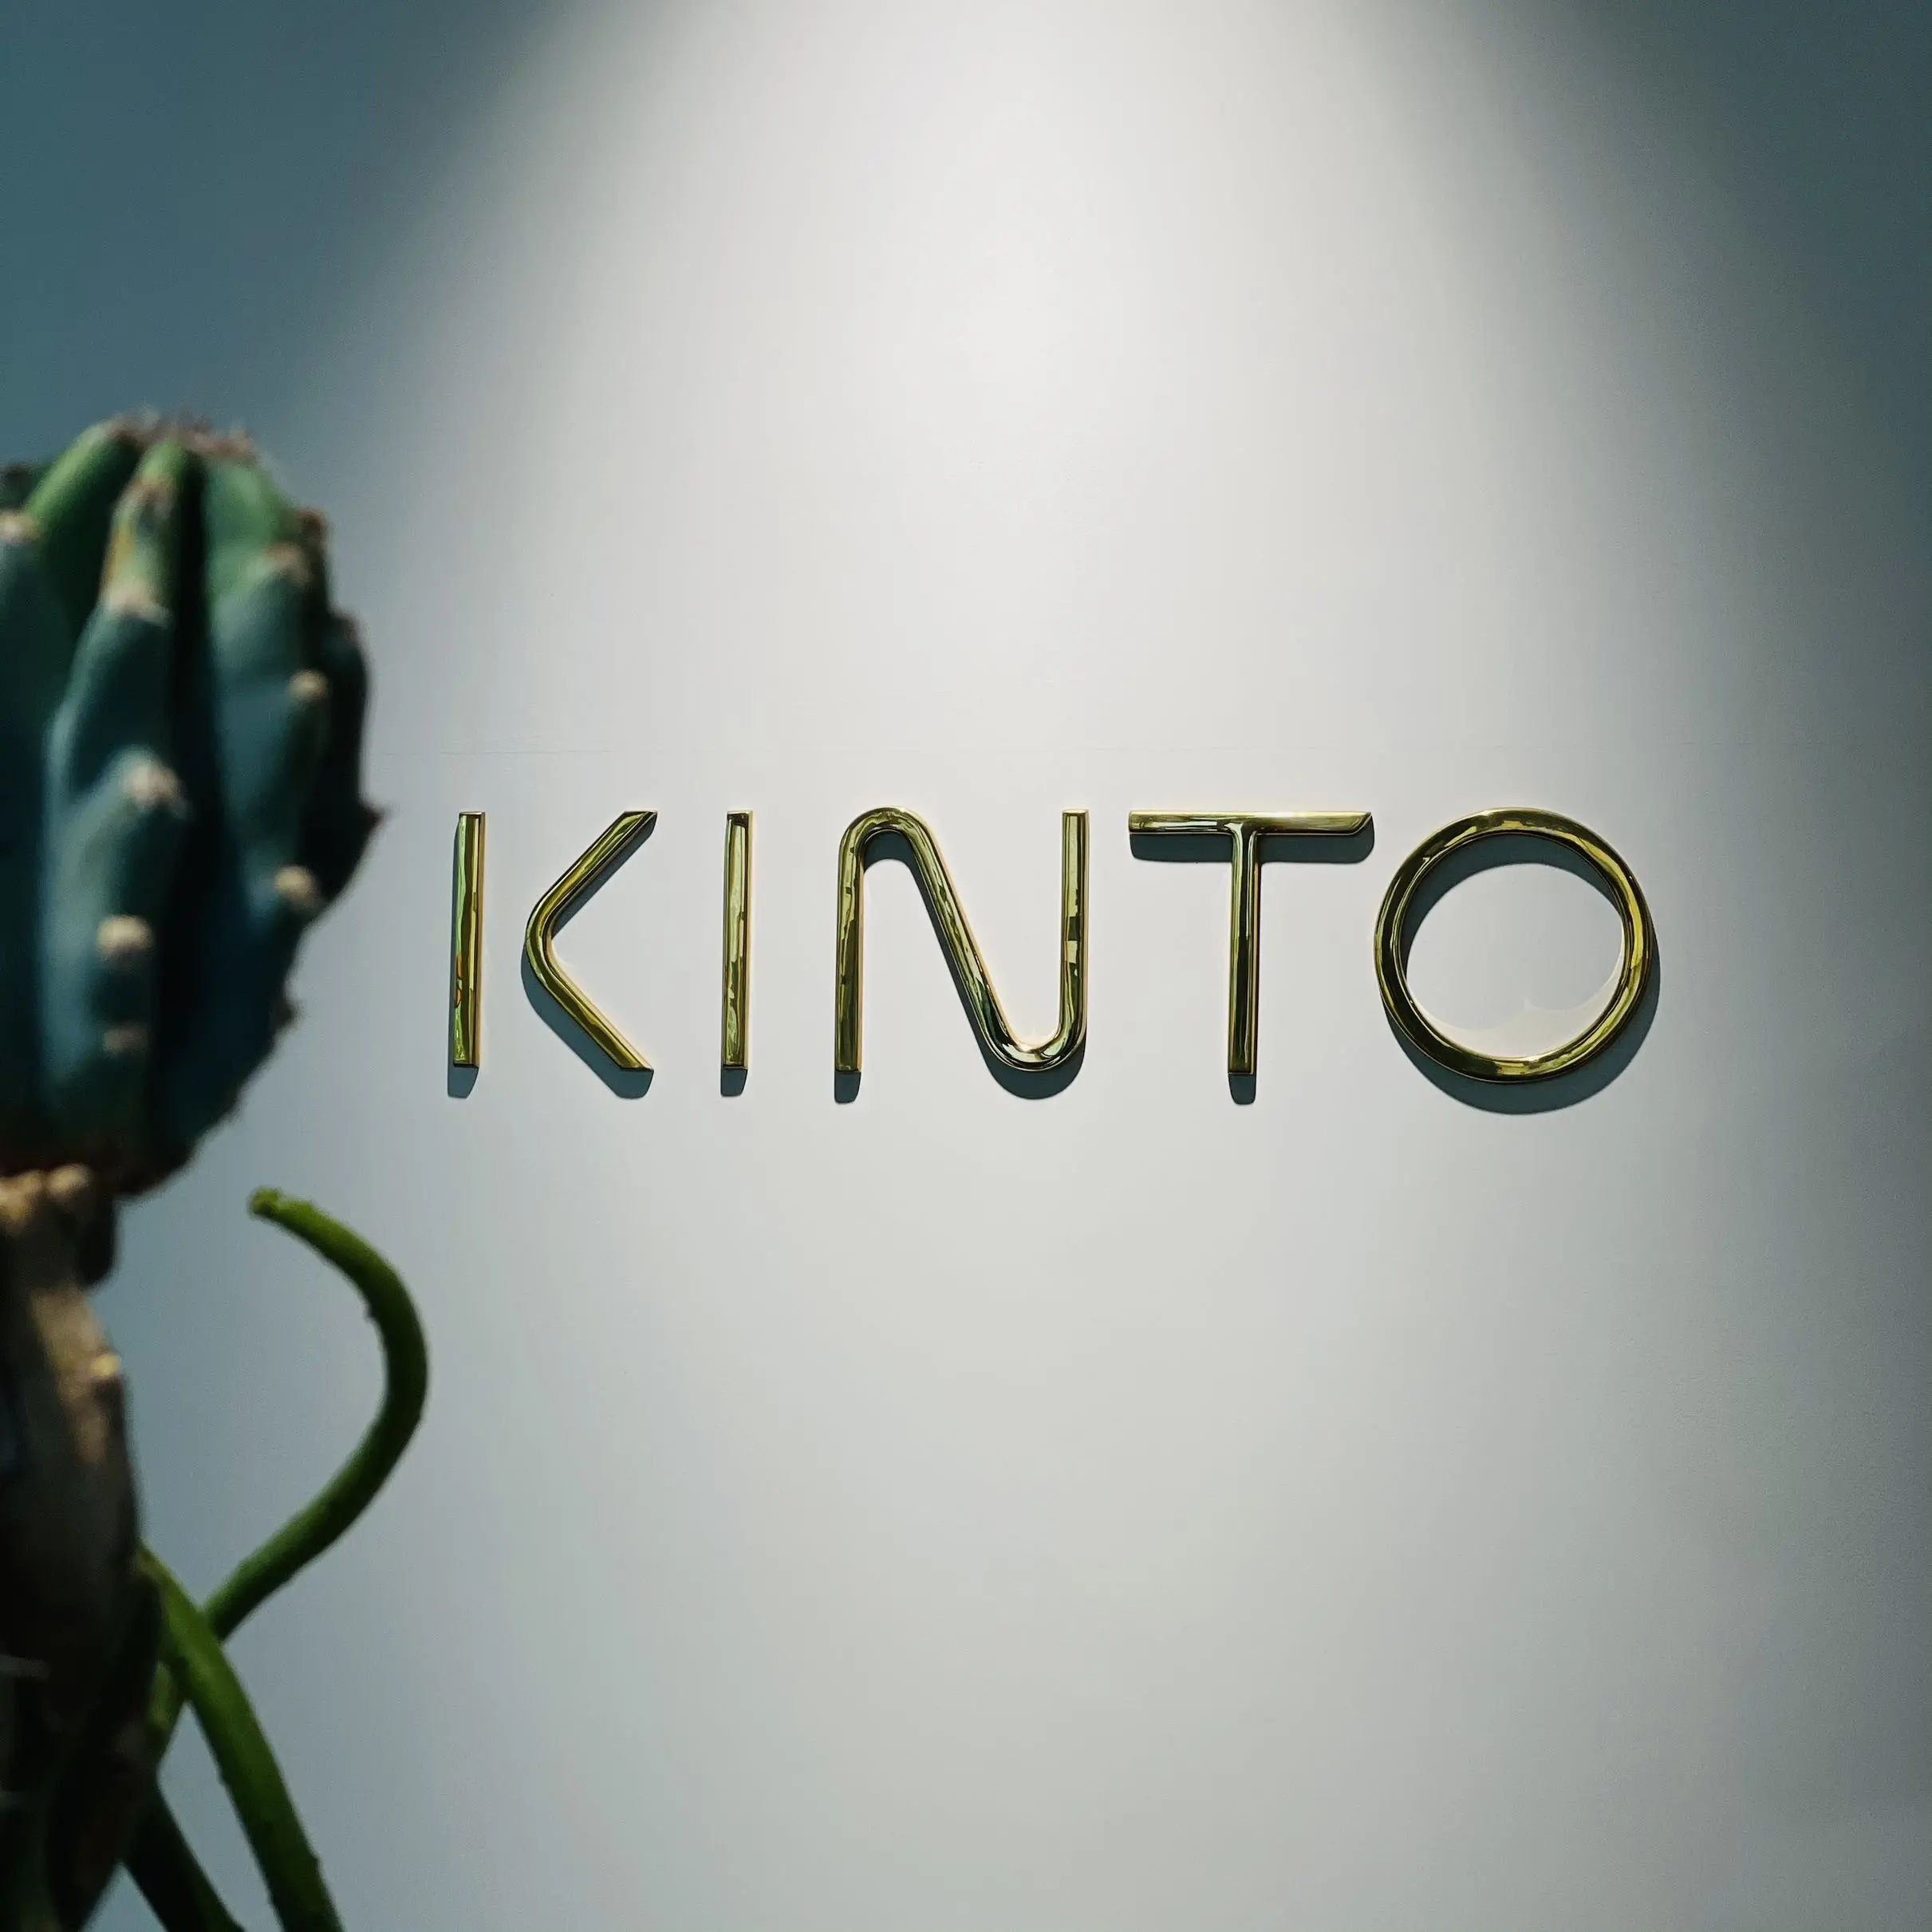 雑貨店「KINTO」の店名写真